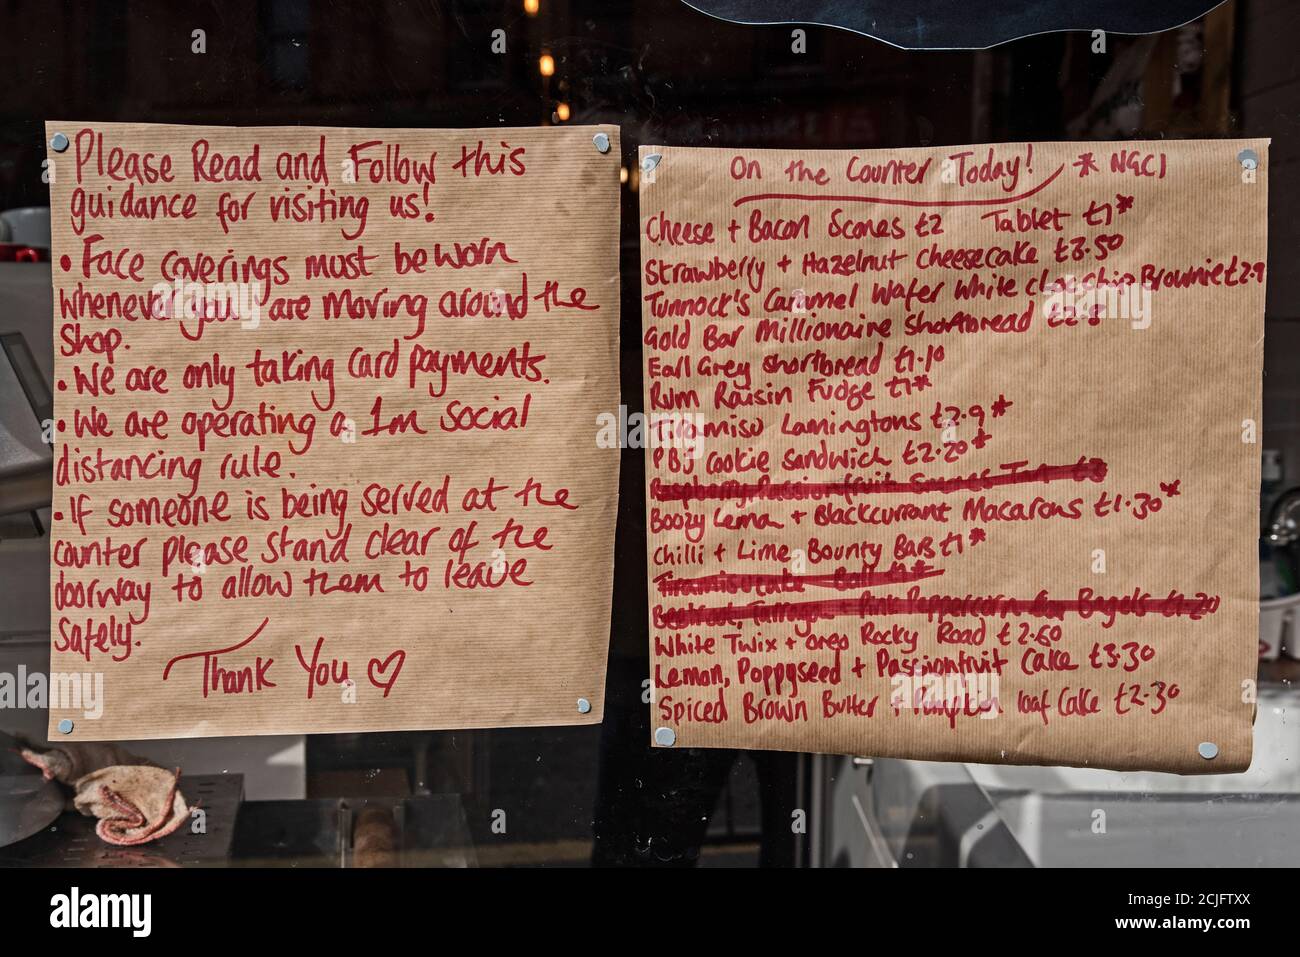 Règles manuscrites de covid et liste de gâteaux dans la fenêtre de la boulangerie à Bread Street, Édimbourg, Écosse, Royaume-Uni. Banque D'Images